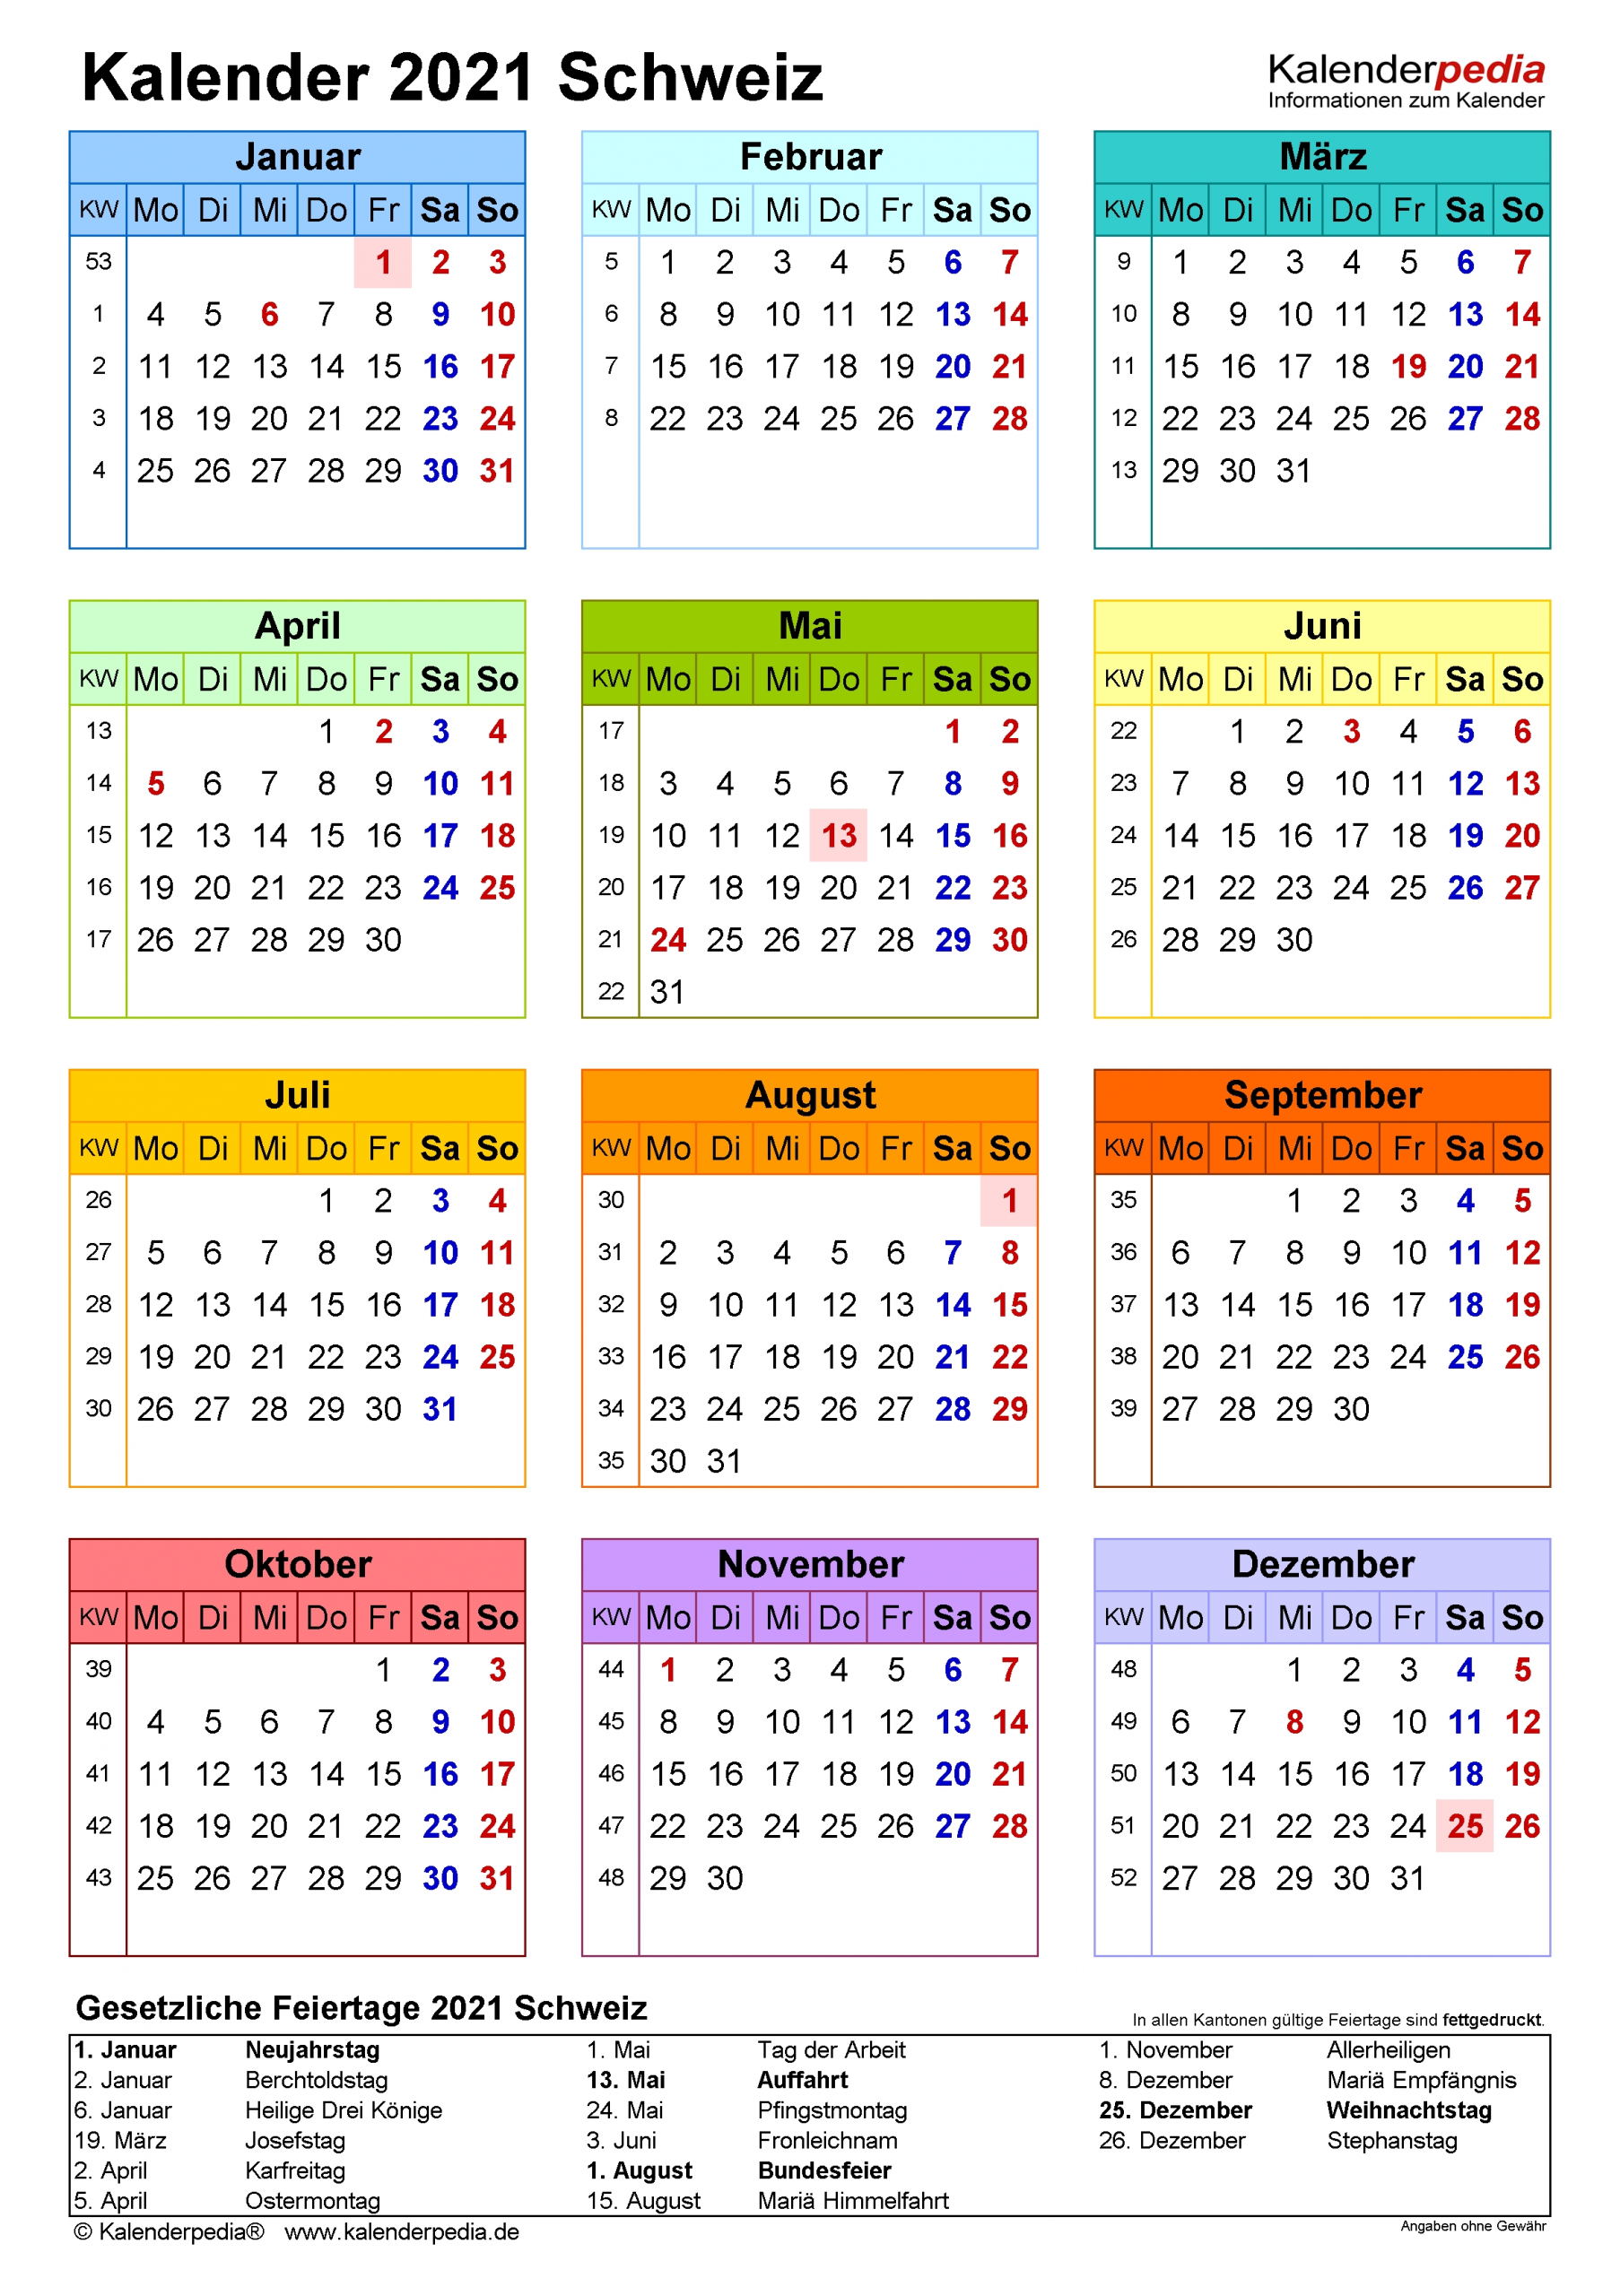 Get Kalenderpedia 2021 Schweiz Pro Monat